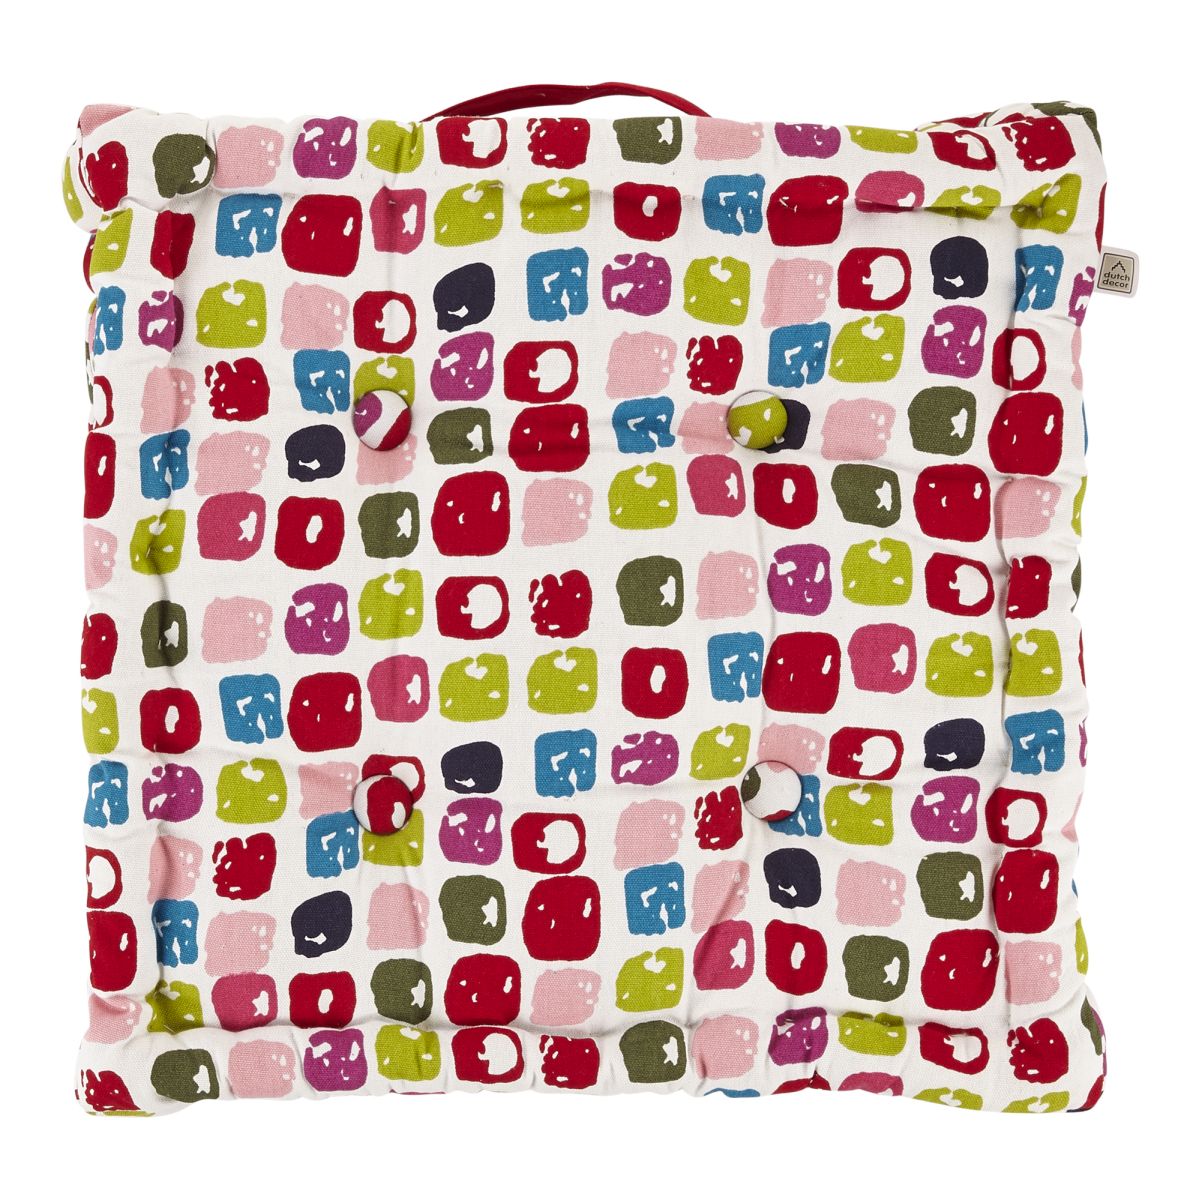 TOBOR - Seat pad cushion coton Multicolor 43x43x8 cm Multicolor